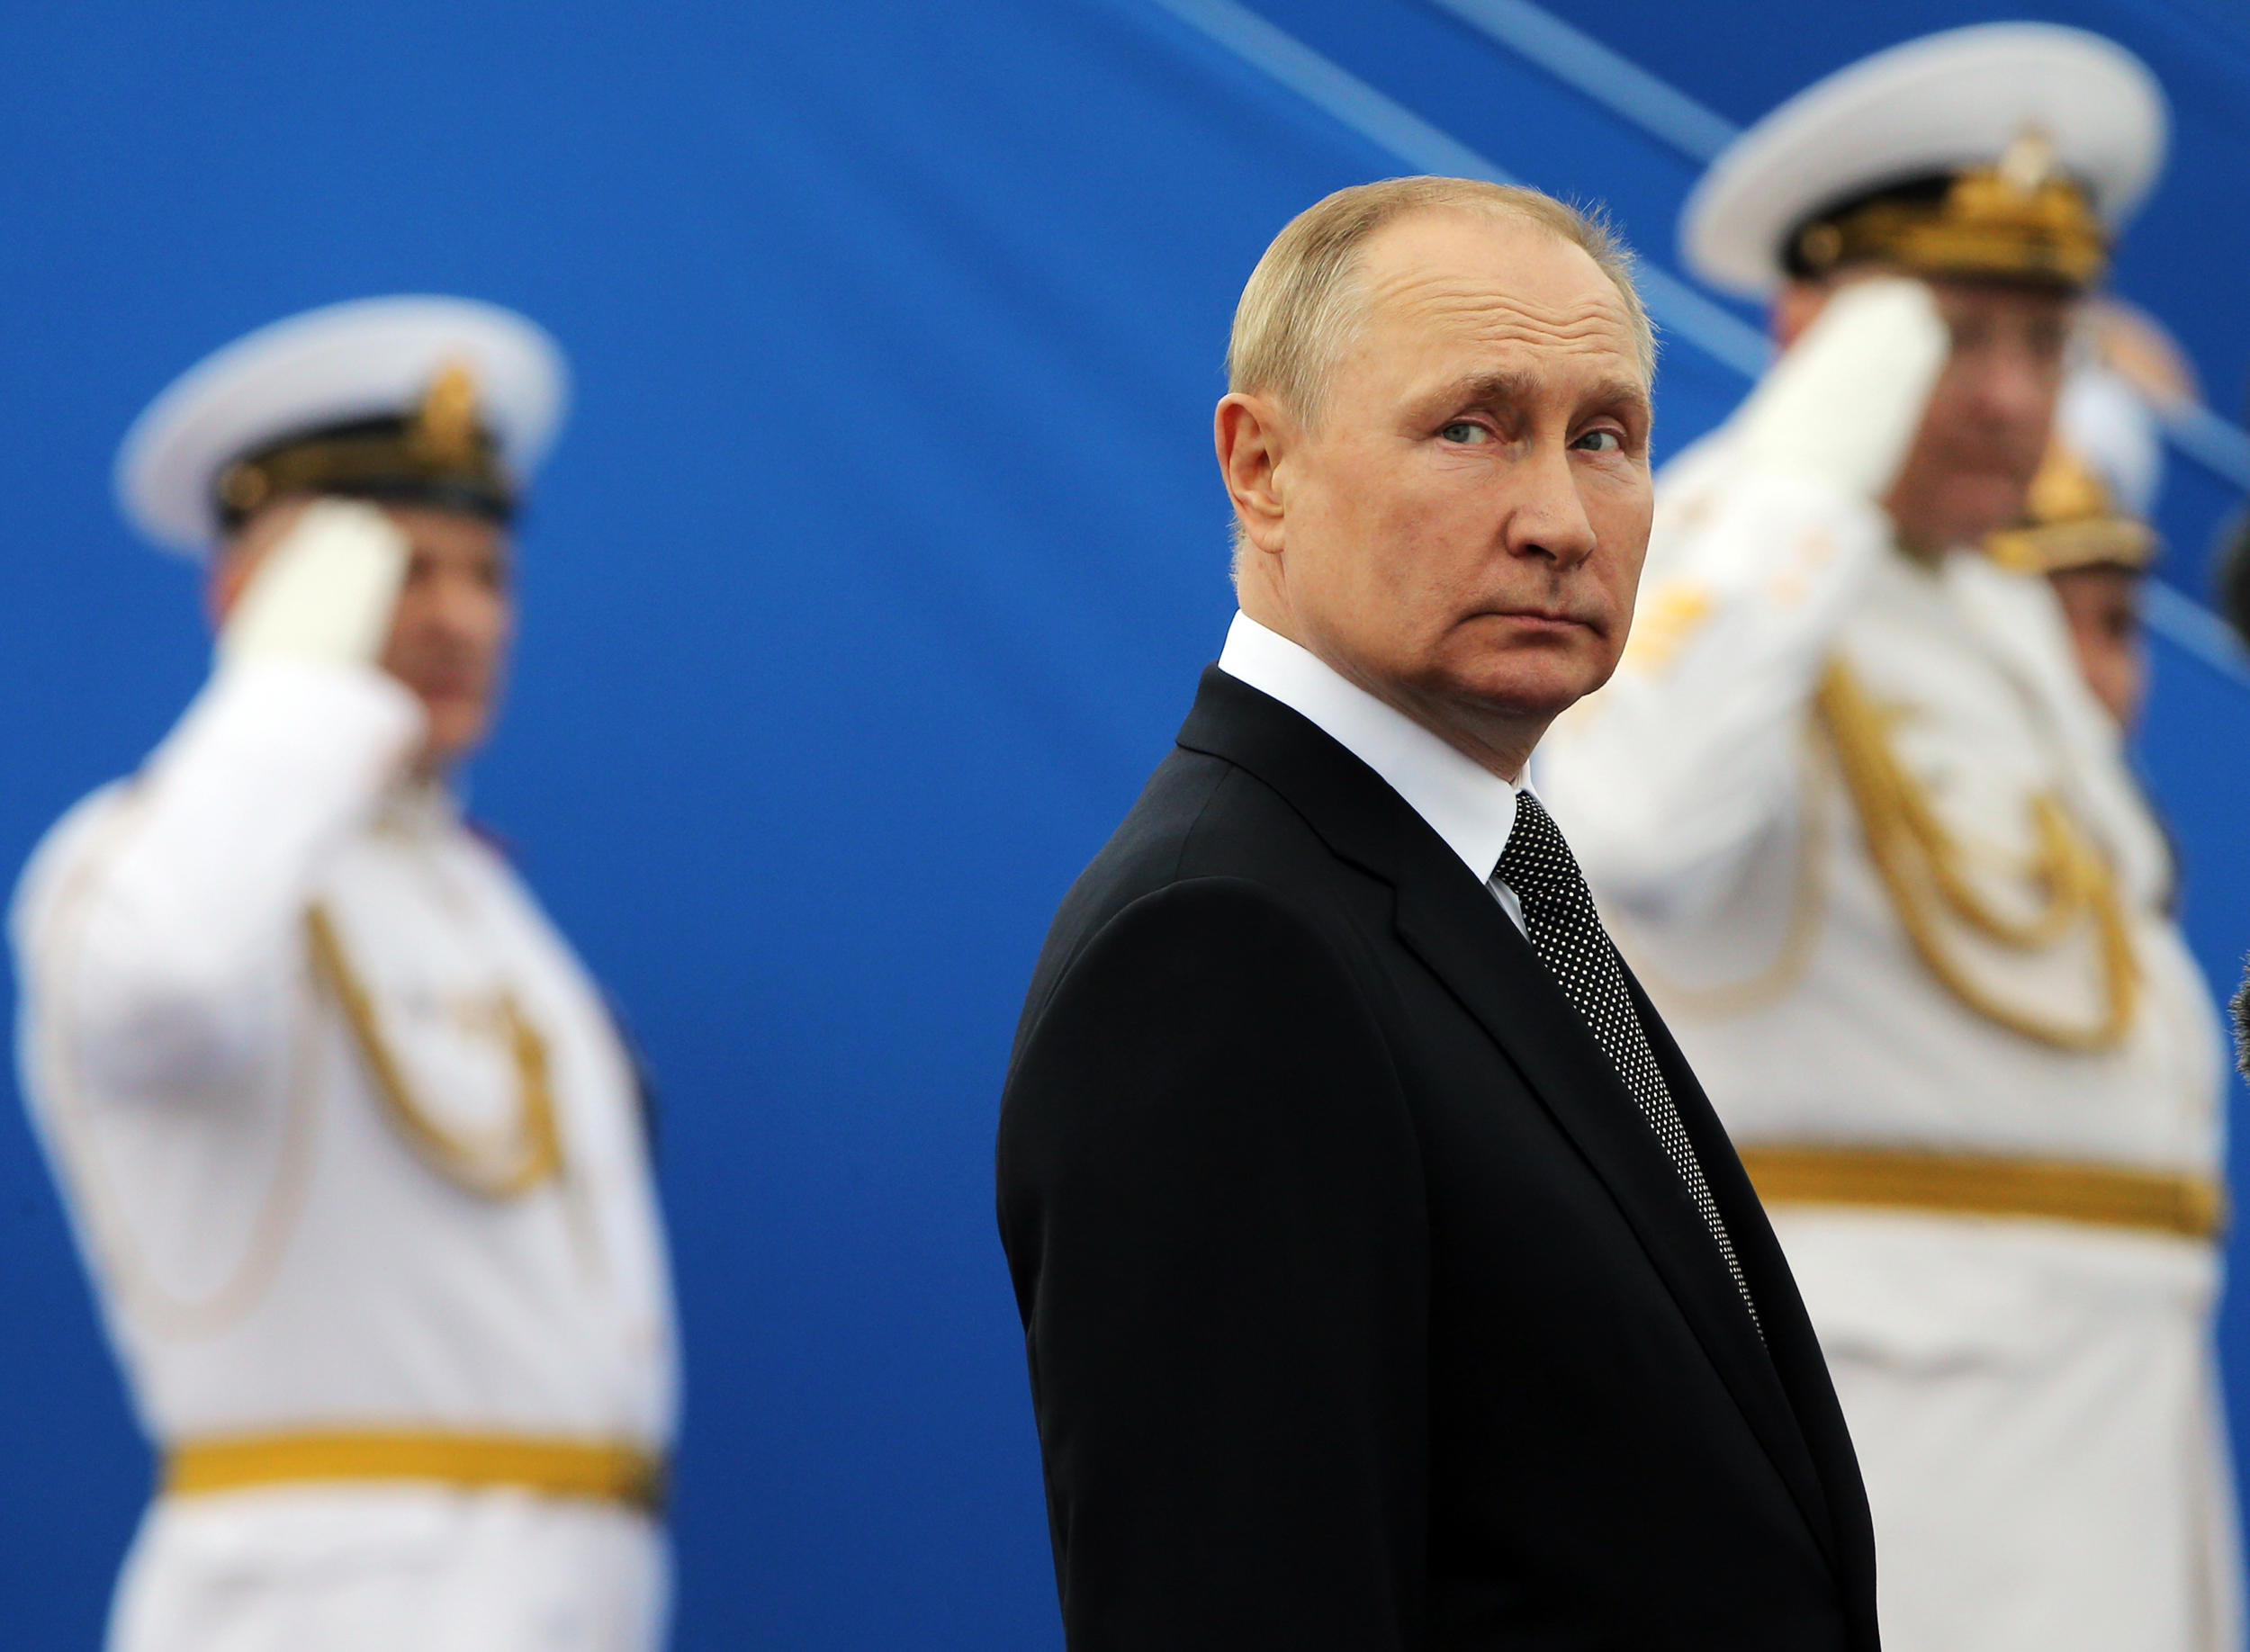 اسکورت سنگین پوتین برای انتقال به کاخ کرملین